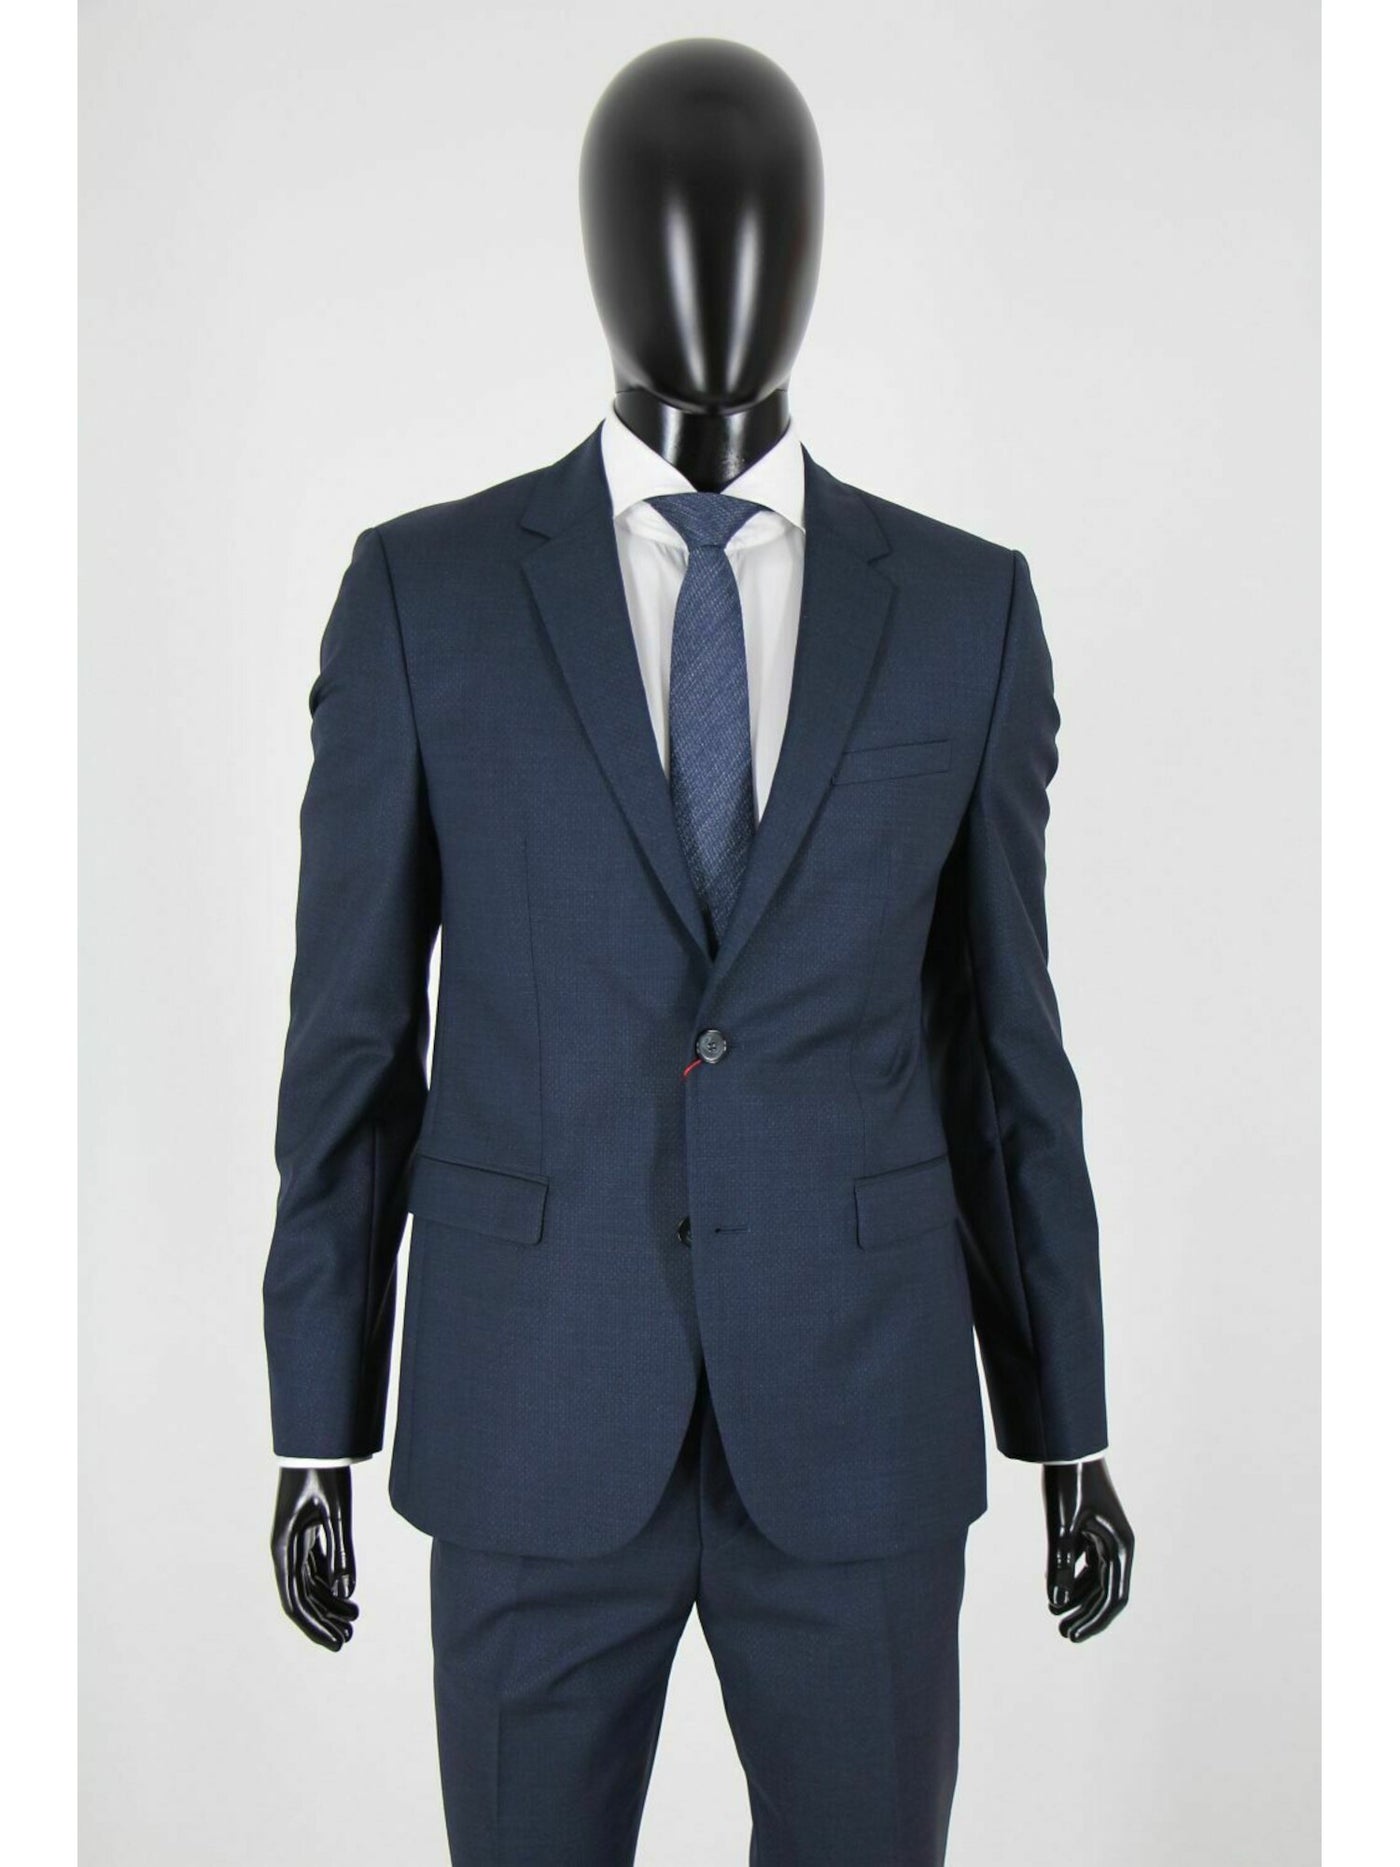 HUGO BOSS Mens Navy Single Breasted, Extra Slim Fit Wool Blend Suit Separate Blazer Jacket 38R